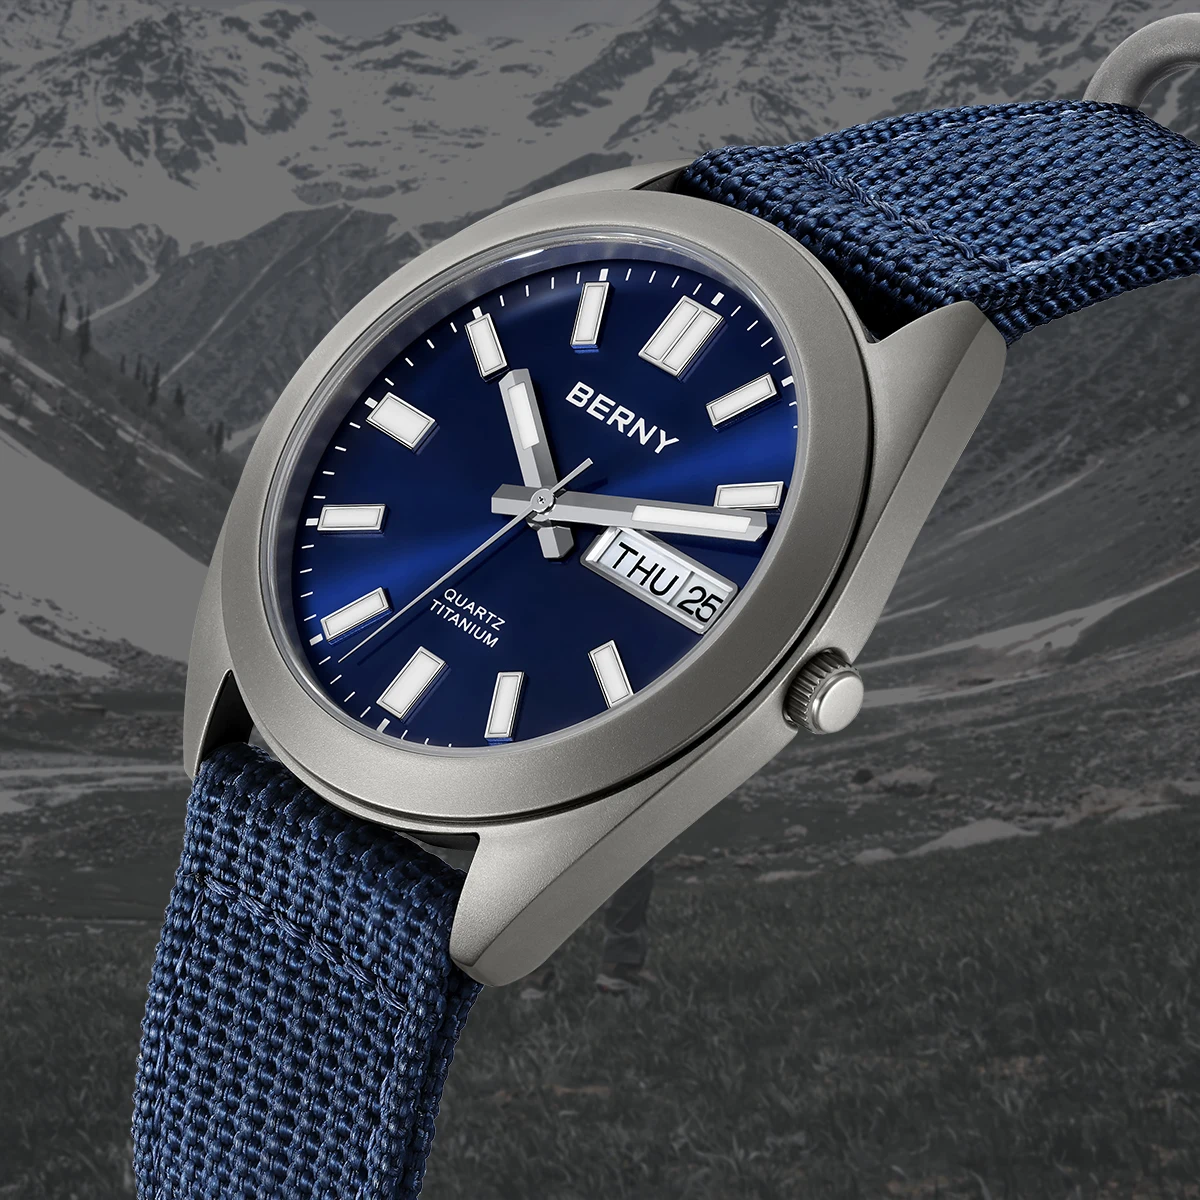 BERNY Titanium Men Watch 40g Weight Sport Field Quartz Wristwatch Super Luminous Sapphire 100m Waterproof Classic SNXS75 Watches